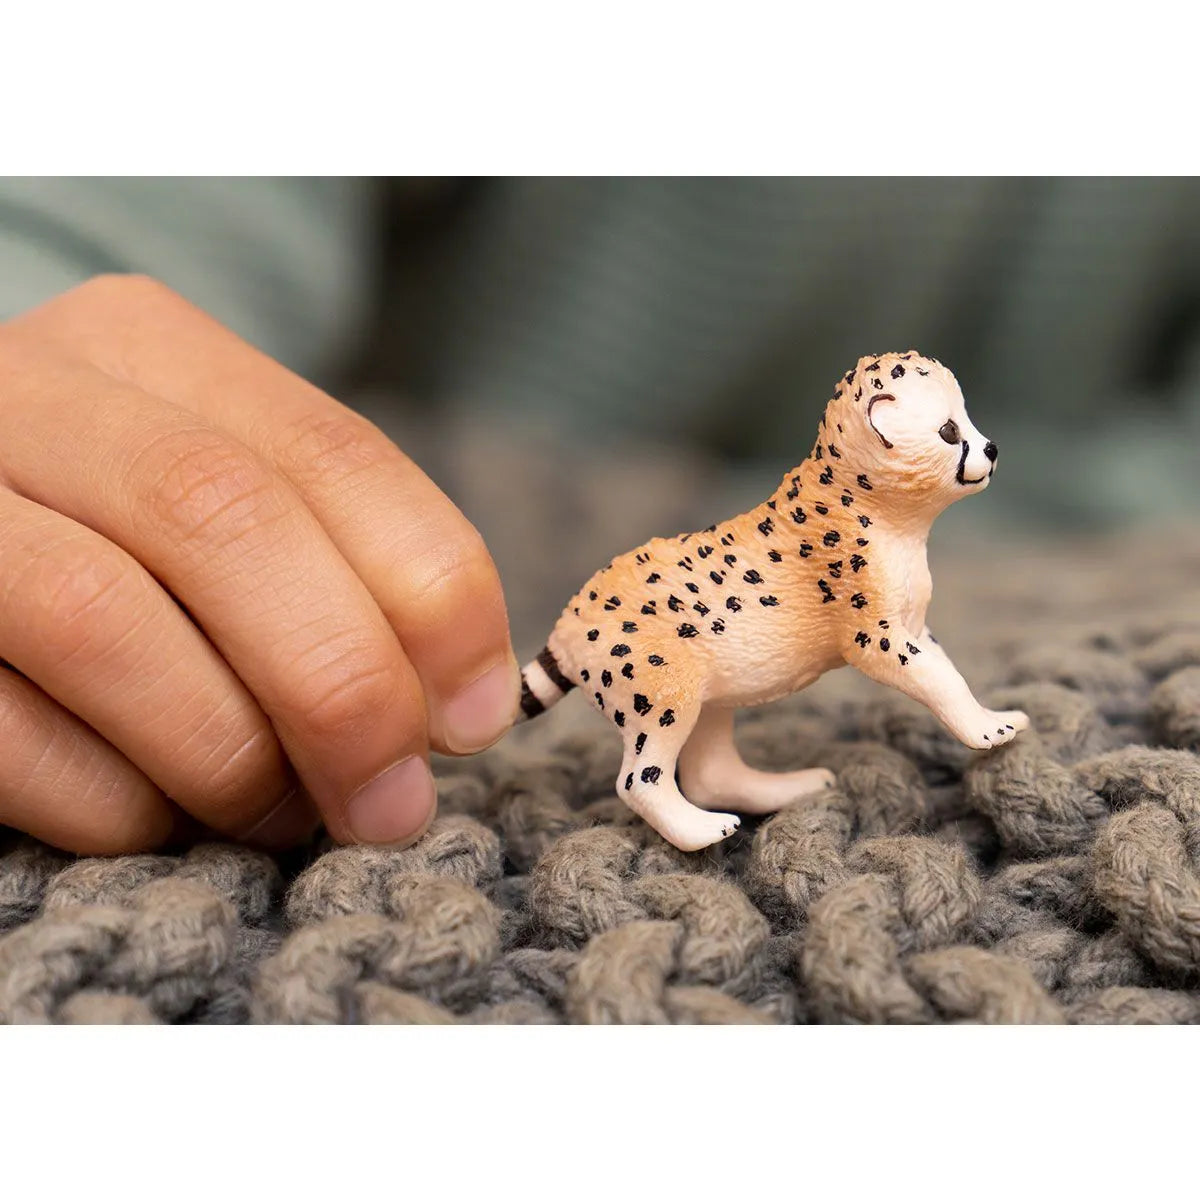 Schleich - Cheetah Cub